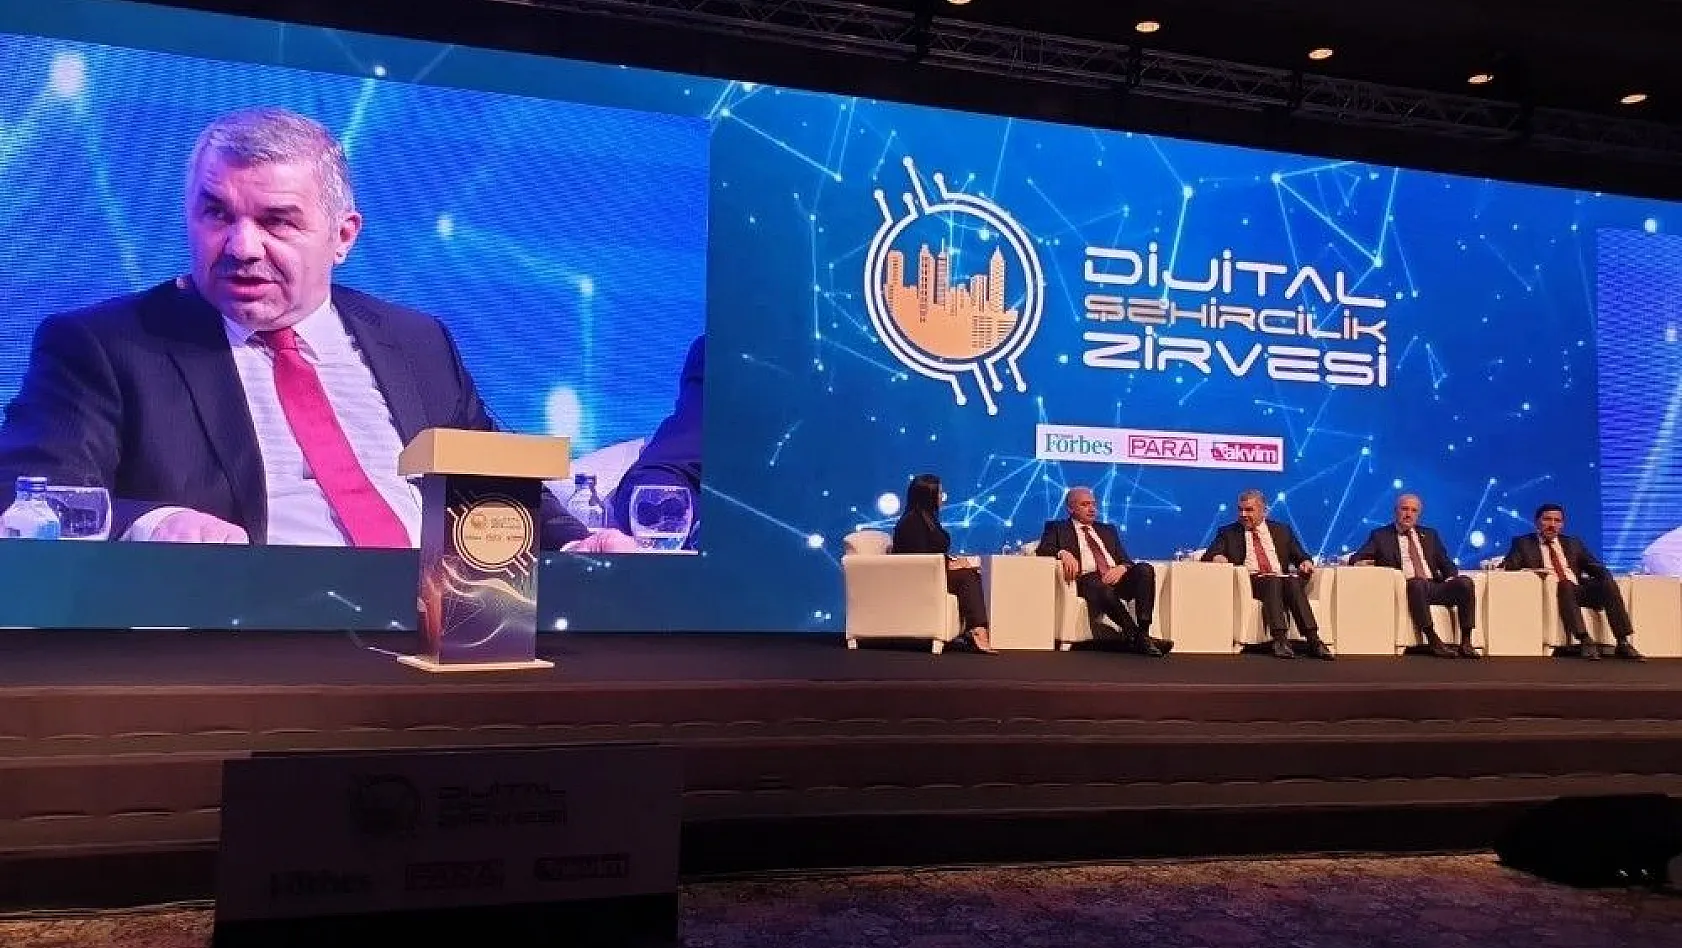 Başkan Çelik, Dijital Şehircilik Zirvesi'ne konuşmacı olarak katıldı
